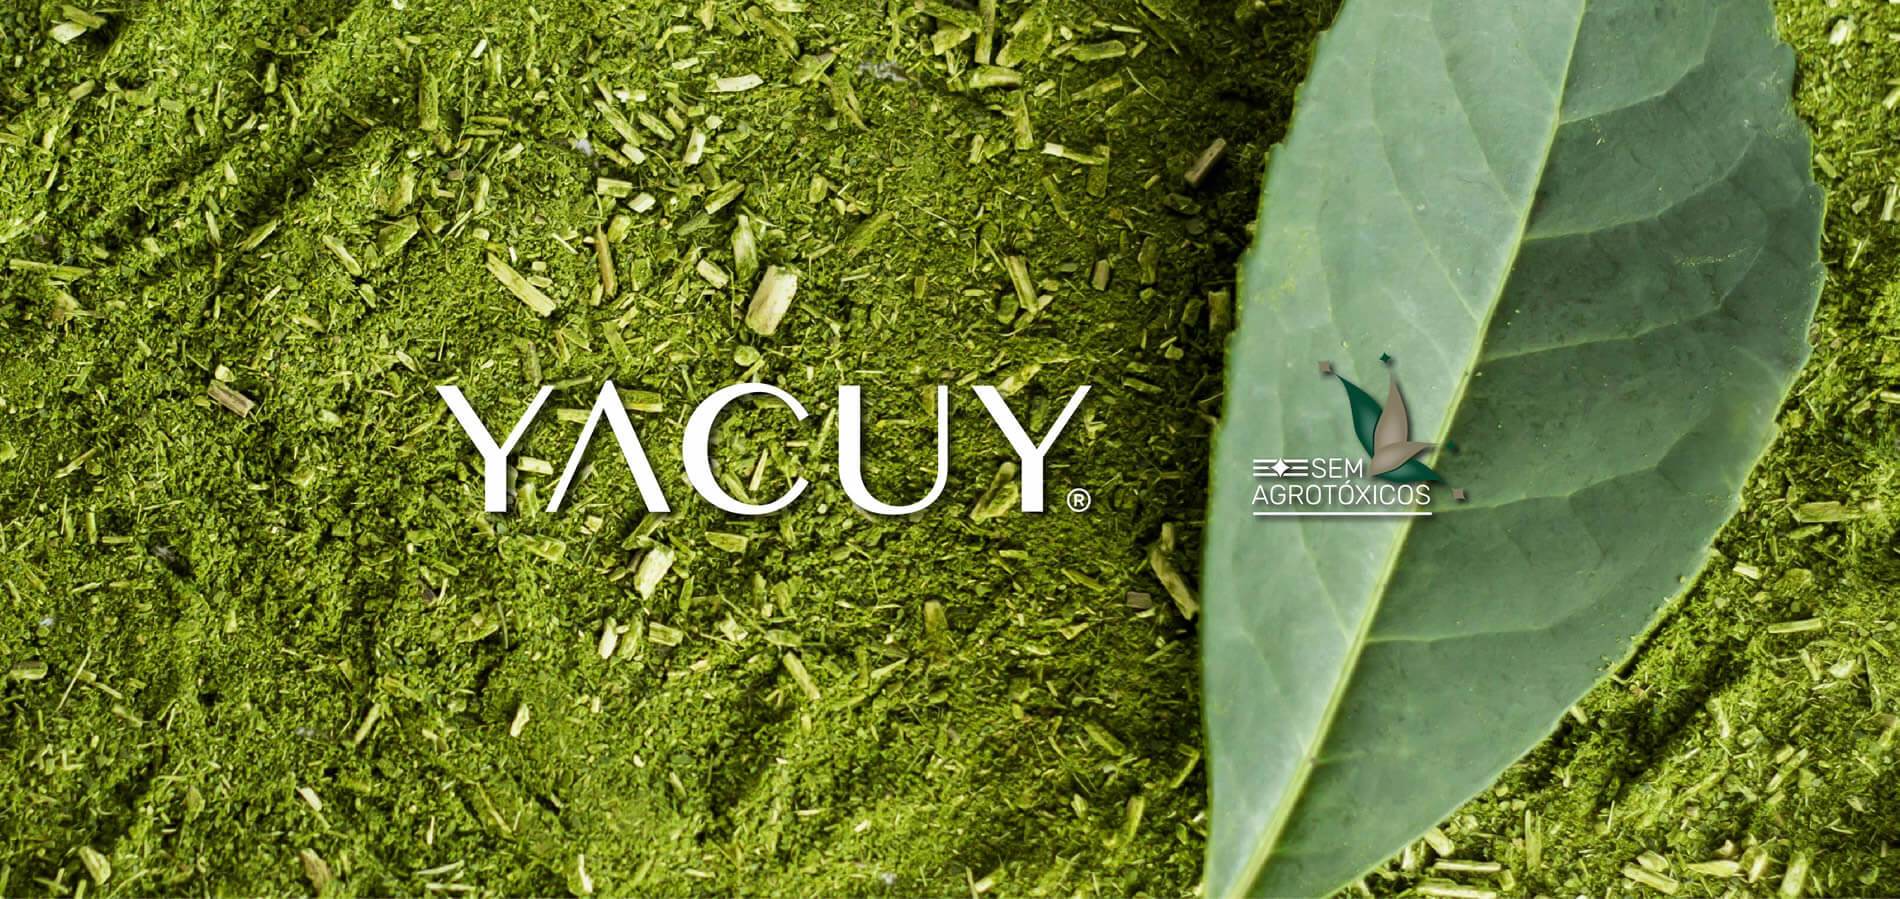 Yacuy - Sem Agrotóxicos